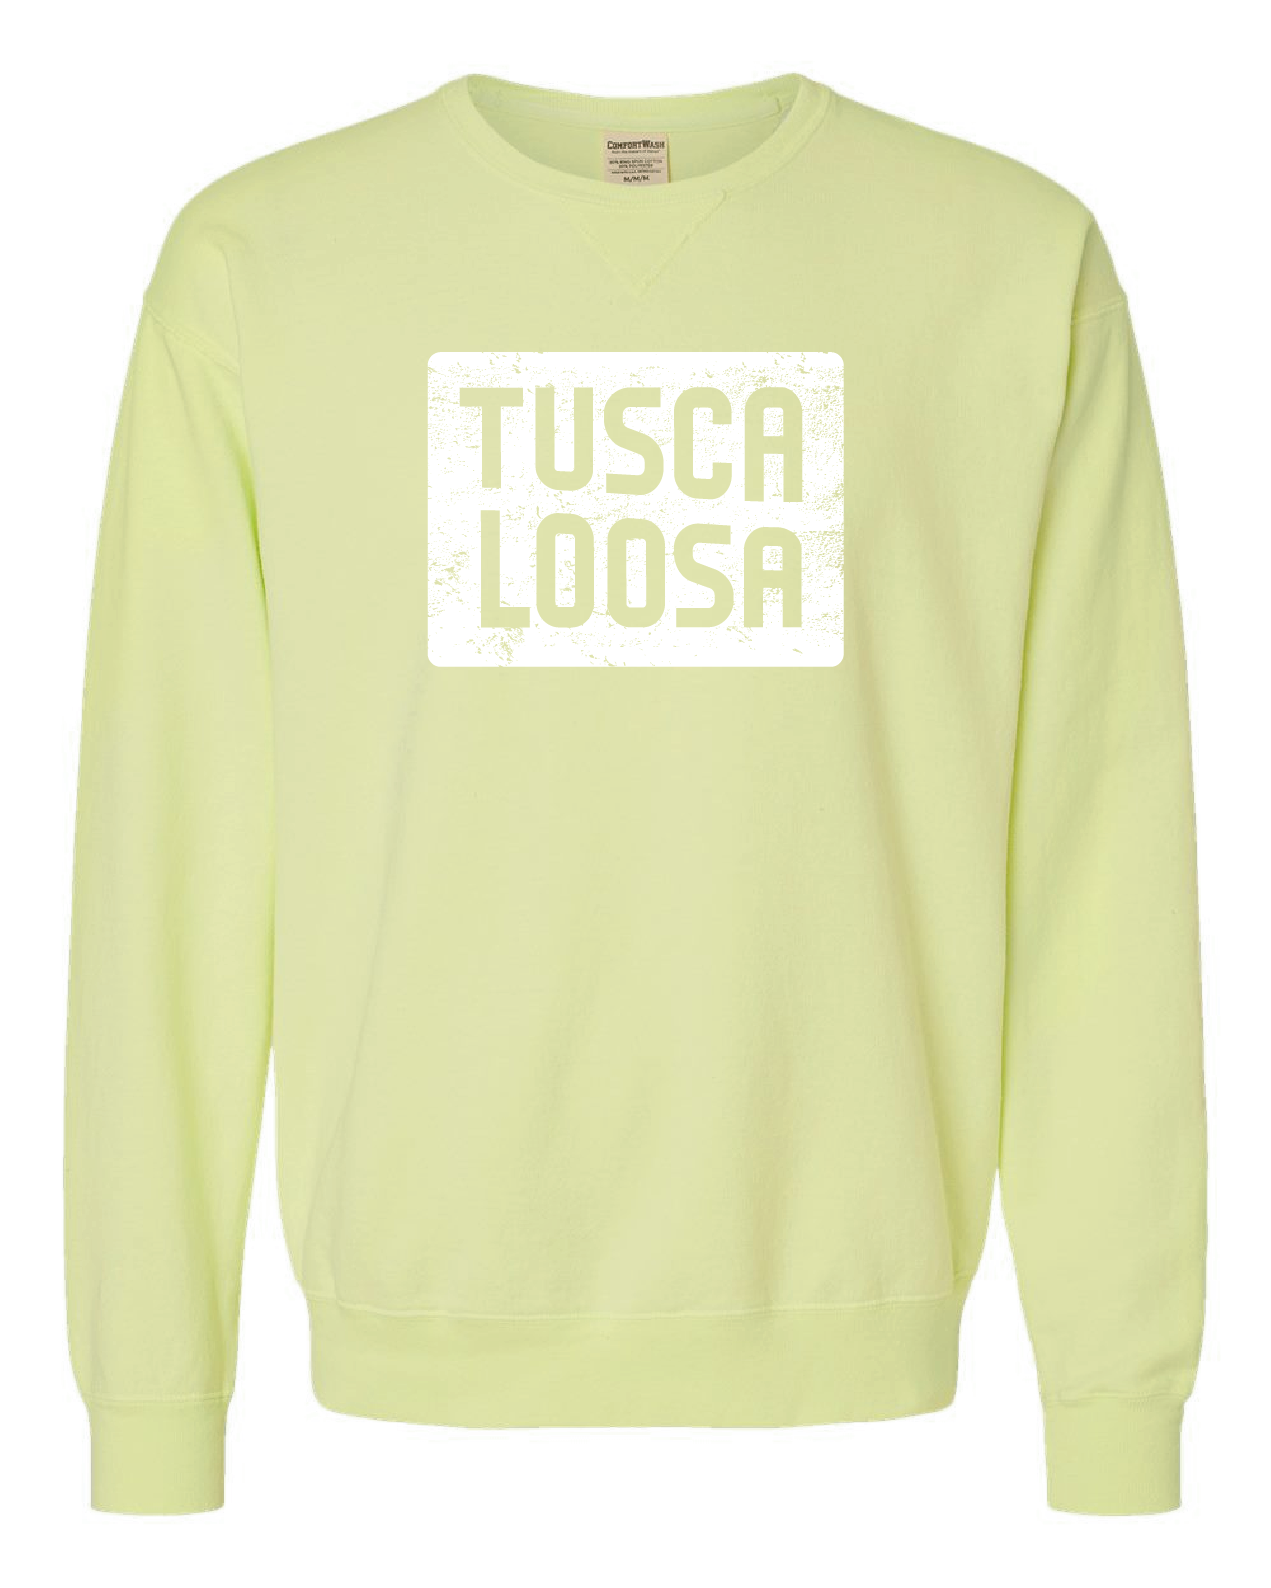 Visit Tuscaloosa: WHITE TUSCALOOSA Crewneck Sweatshirt